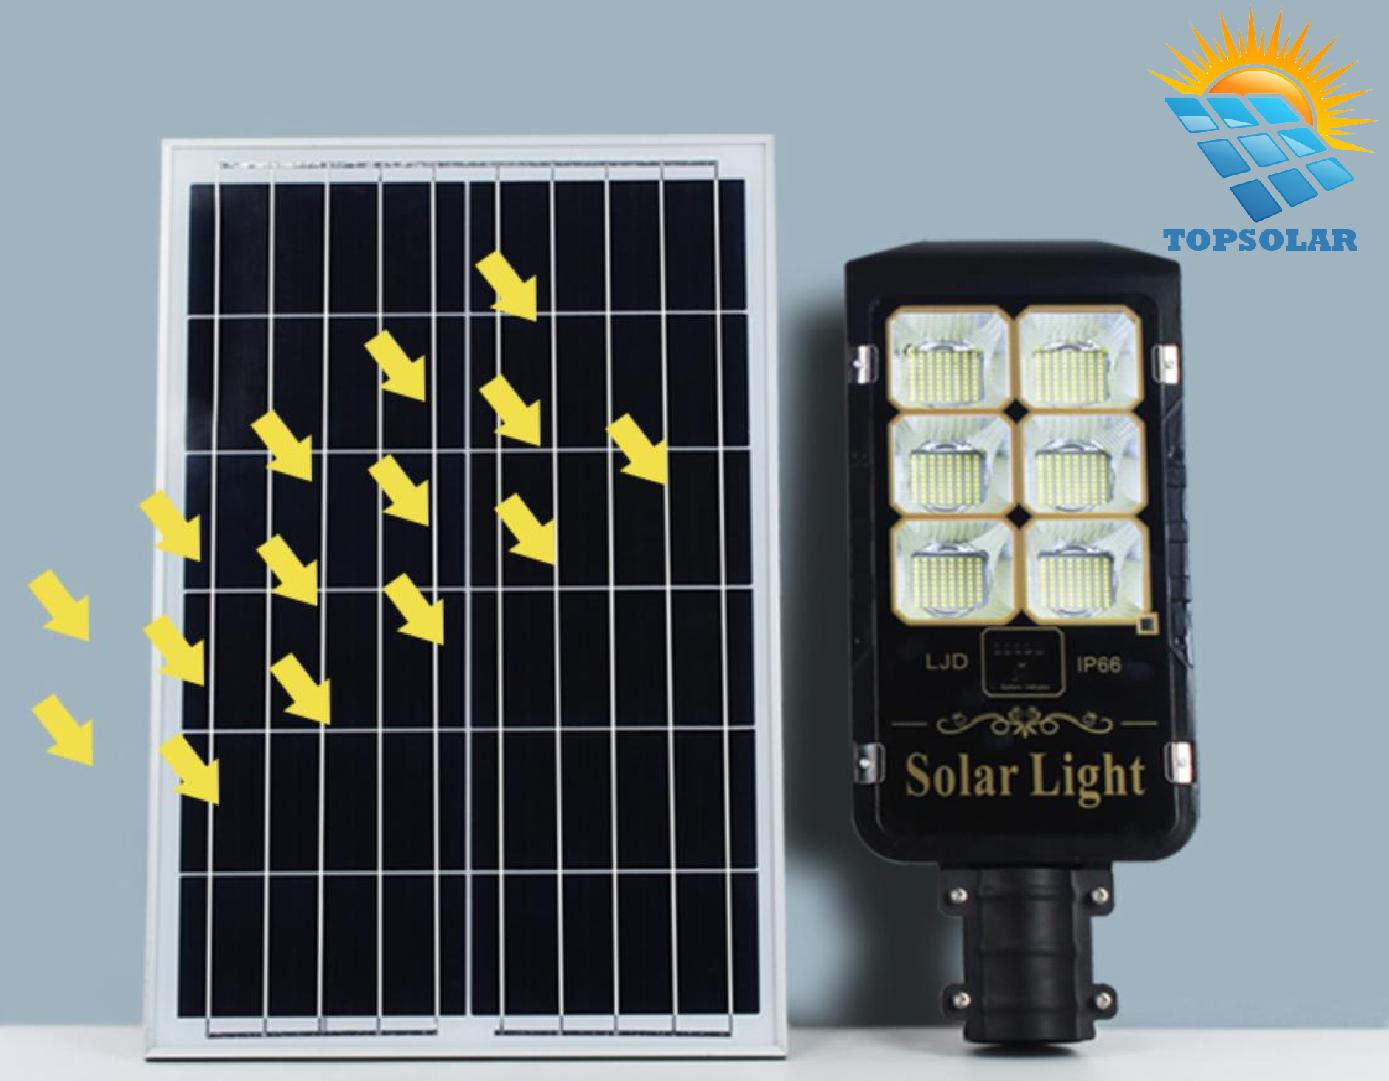 Thi công lắp đặt đèn đường năng lượng mặt trời 400w Trụ đèn đường năng lượng mặt trời 100w loại tốt cao từ 6m đến 8m là khoảng cách an toàn nhất theo thiết kế của nhà sản xuất đưa ra.